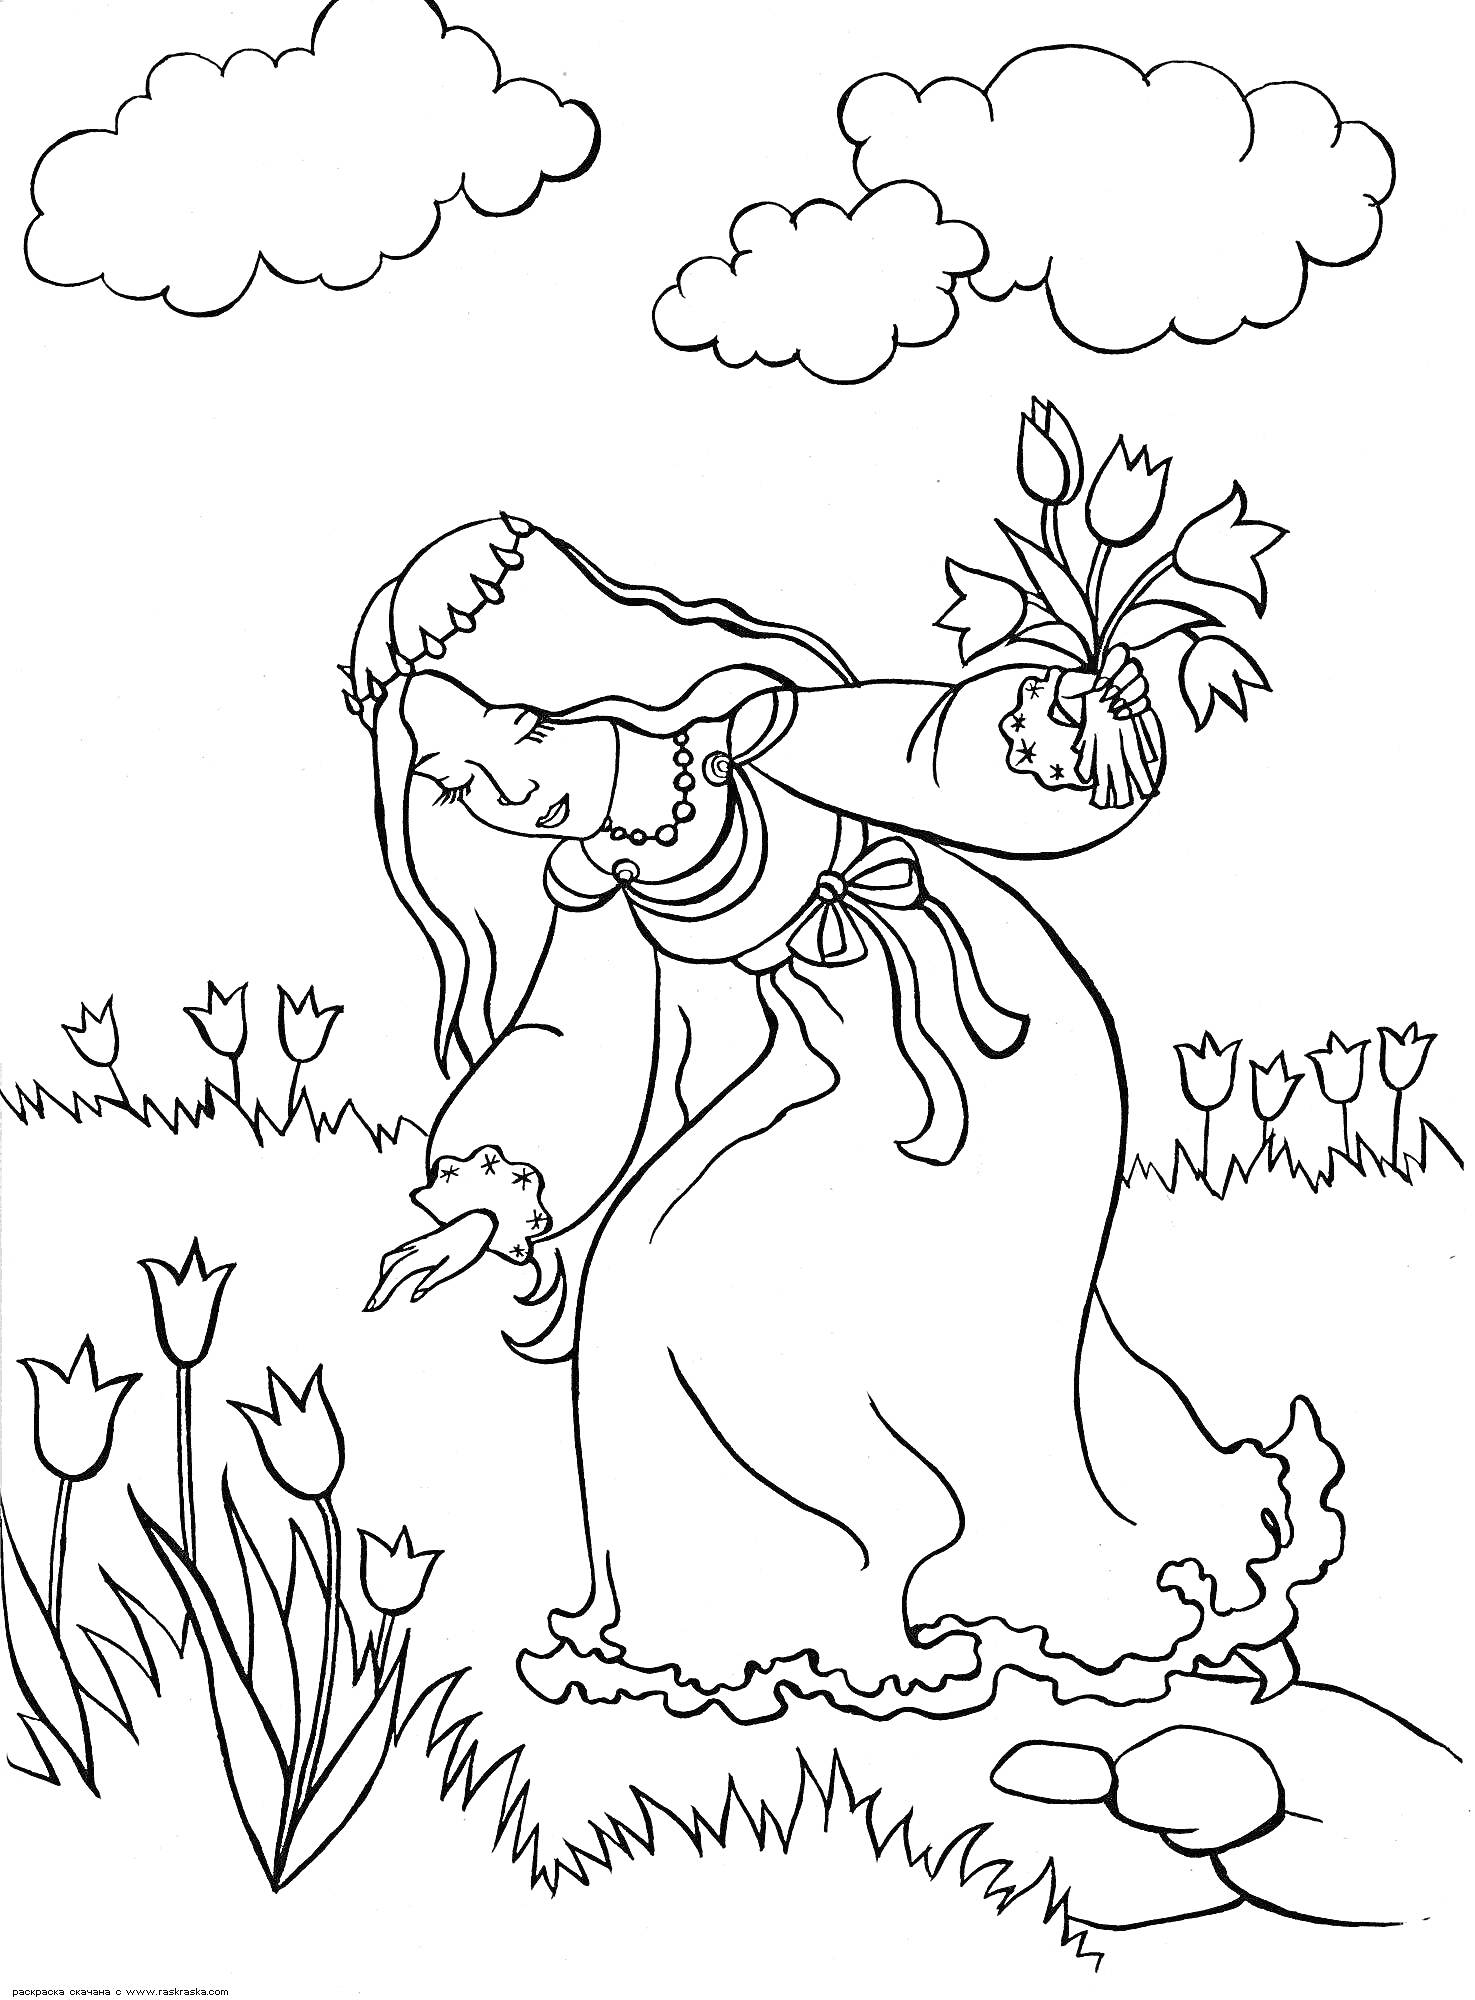 Девочка с букетом среди тюльпанов на поле с облаками